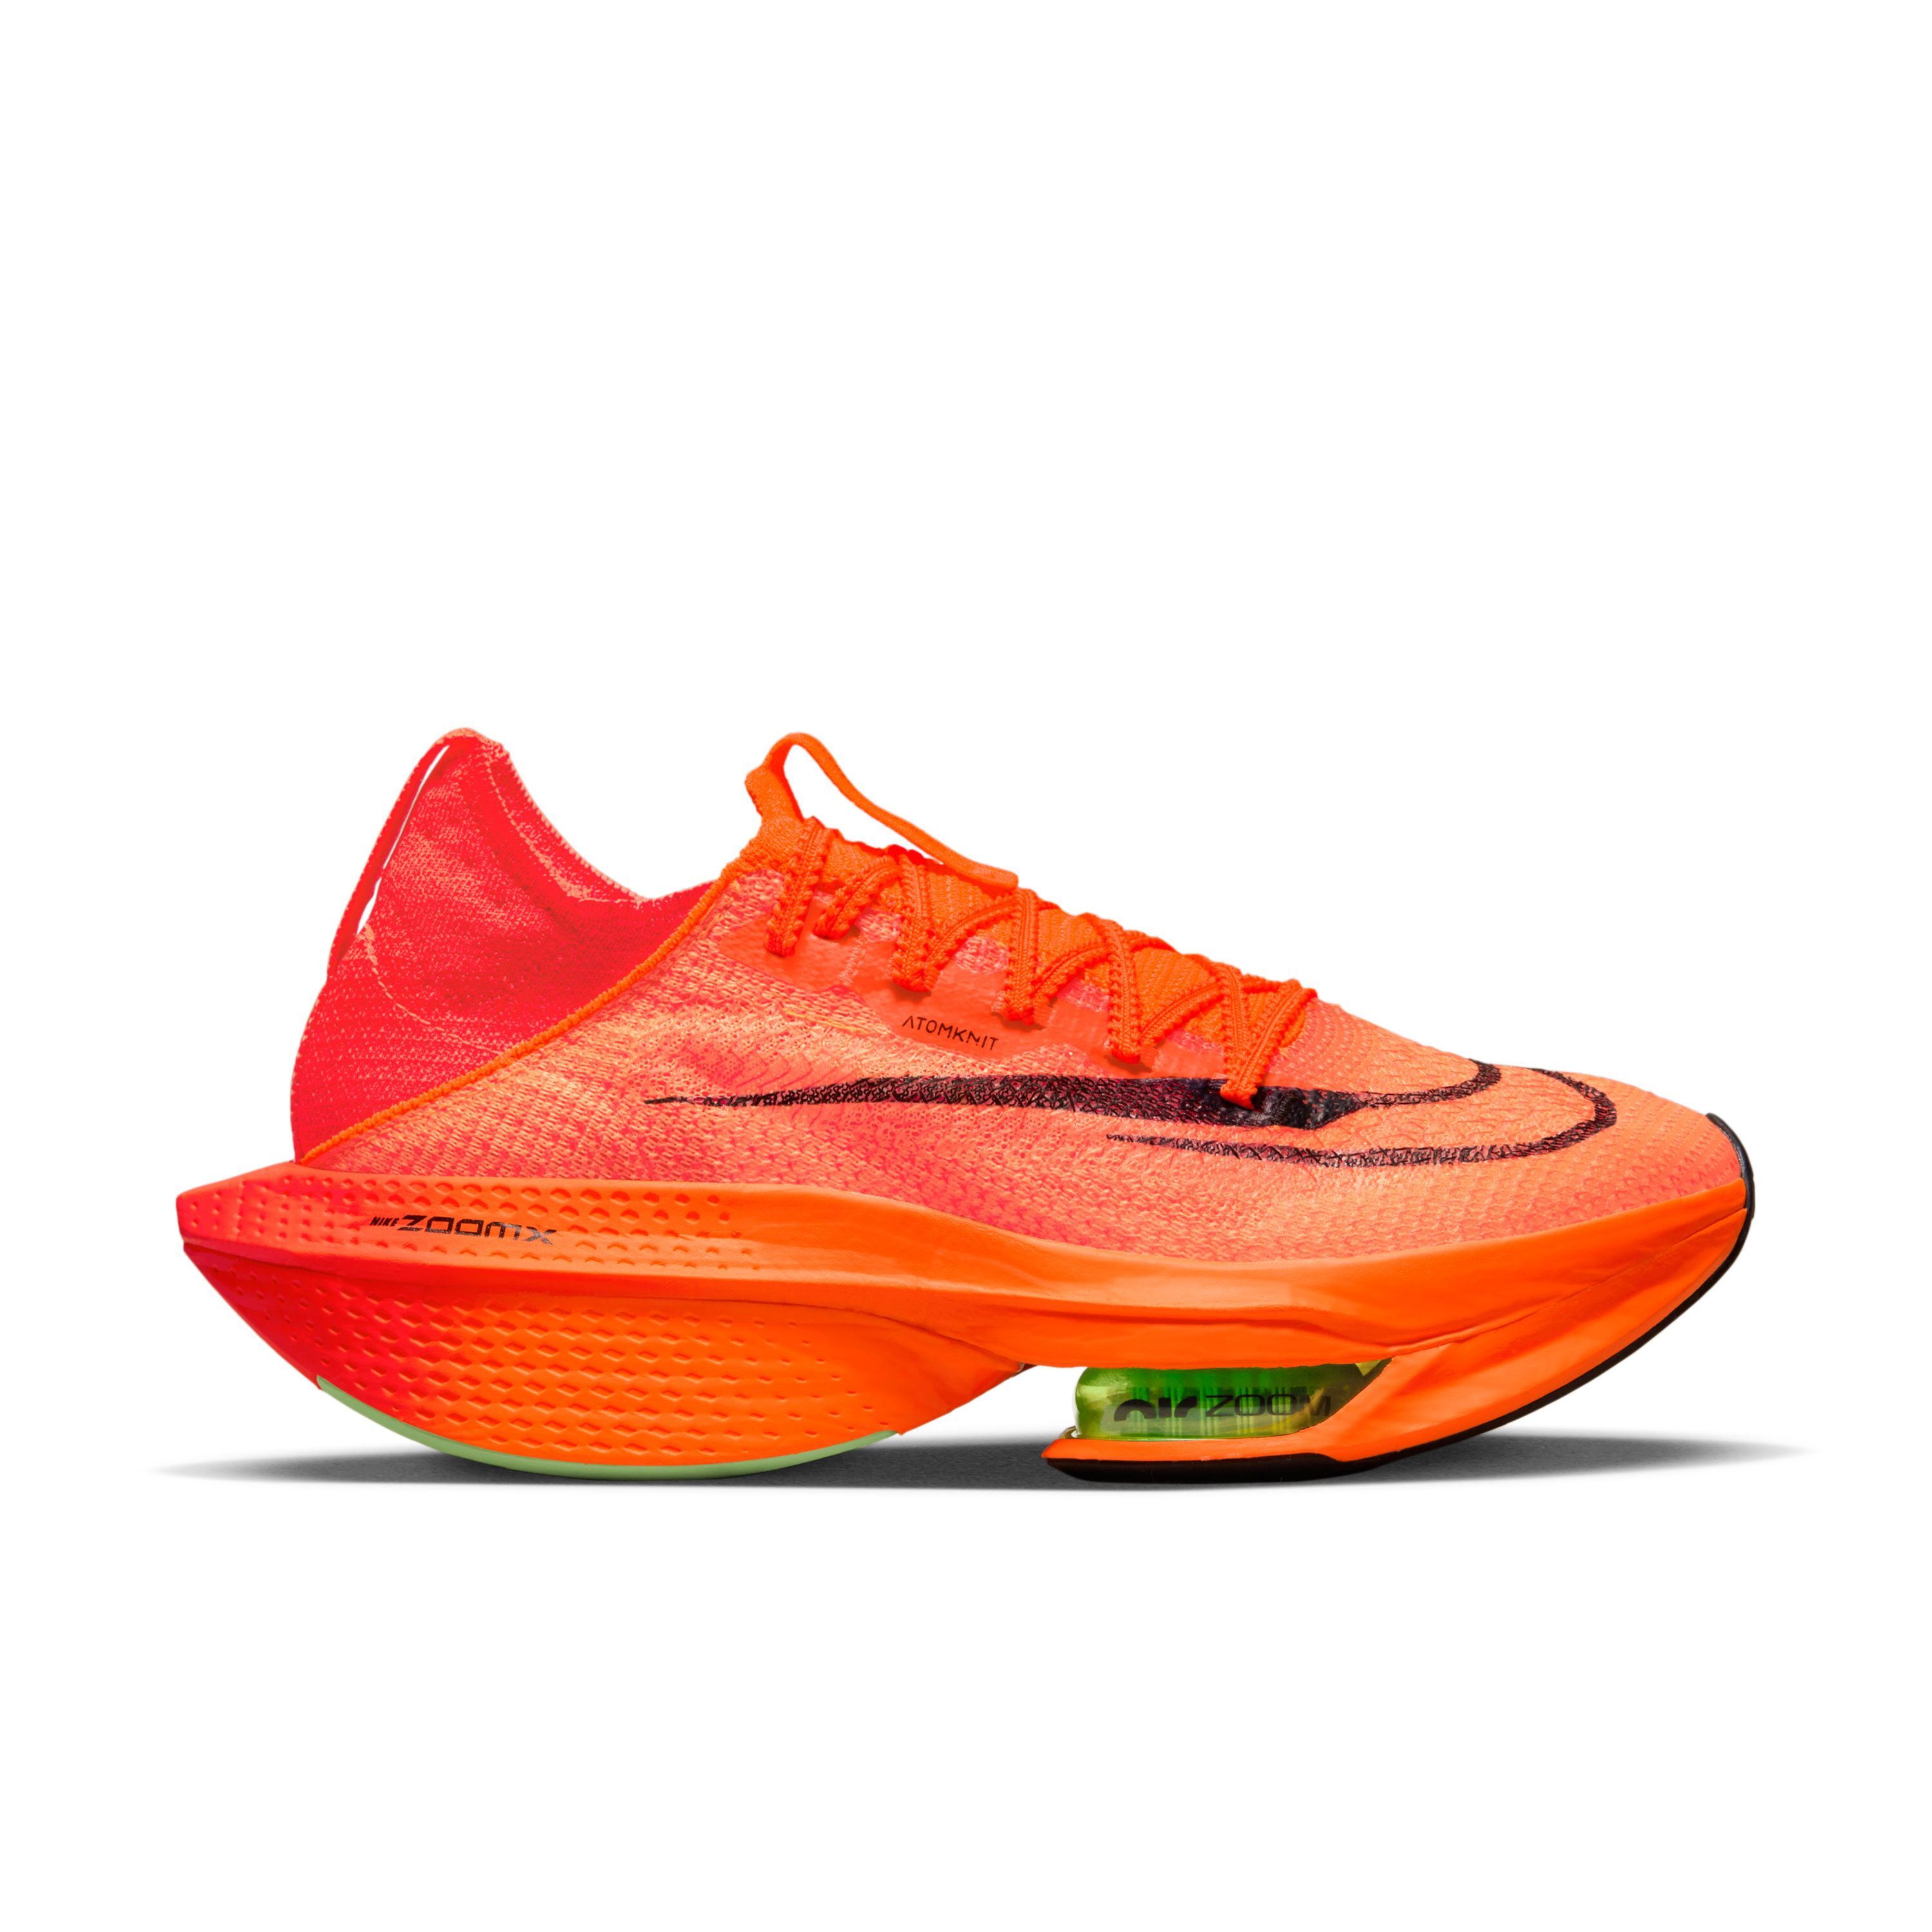 Chaussures de running Nike Air Zoom Alphafly Next% 2